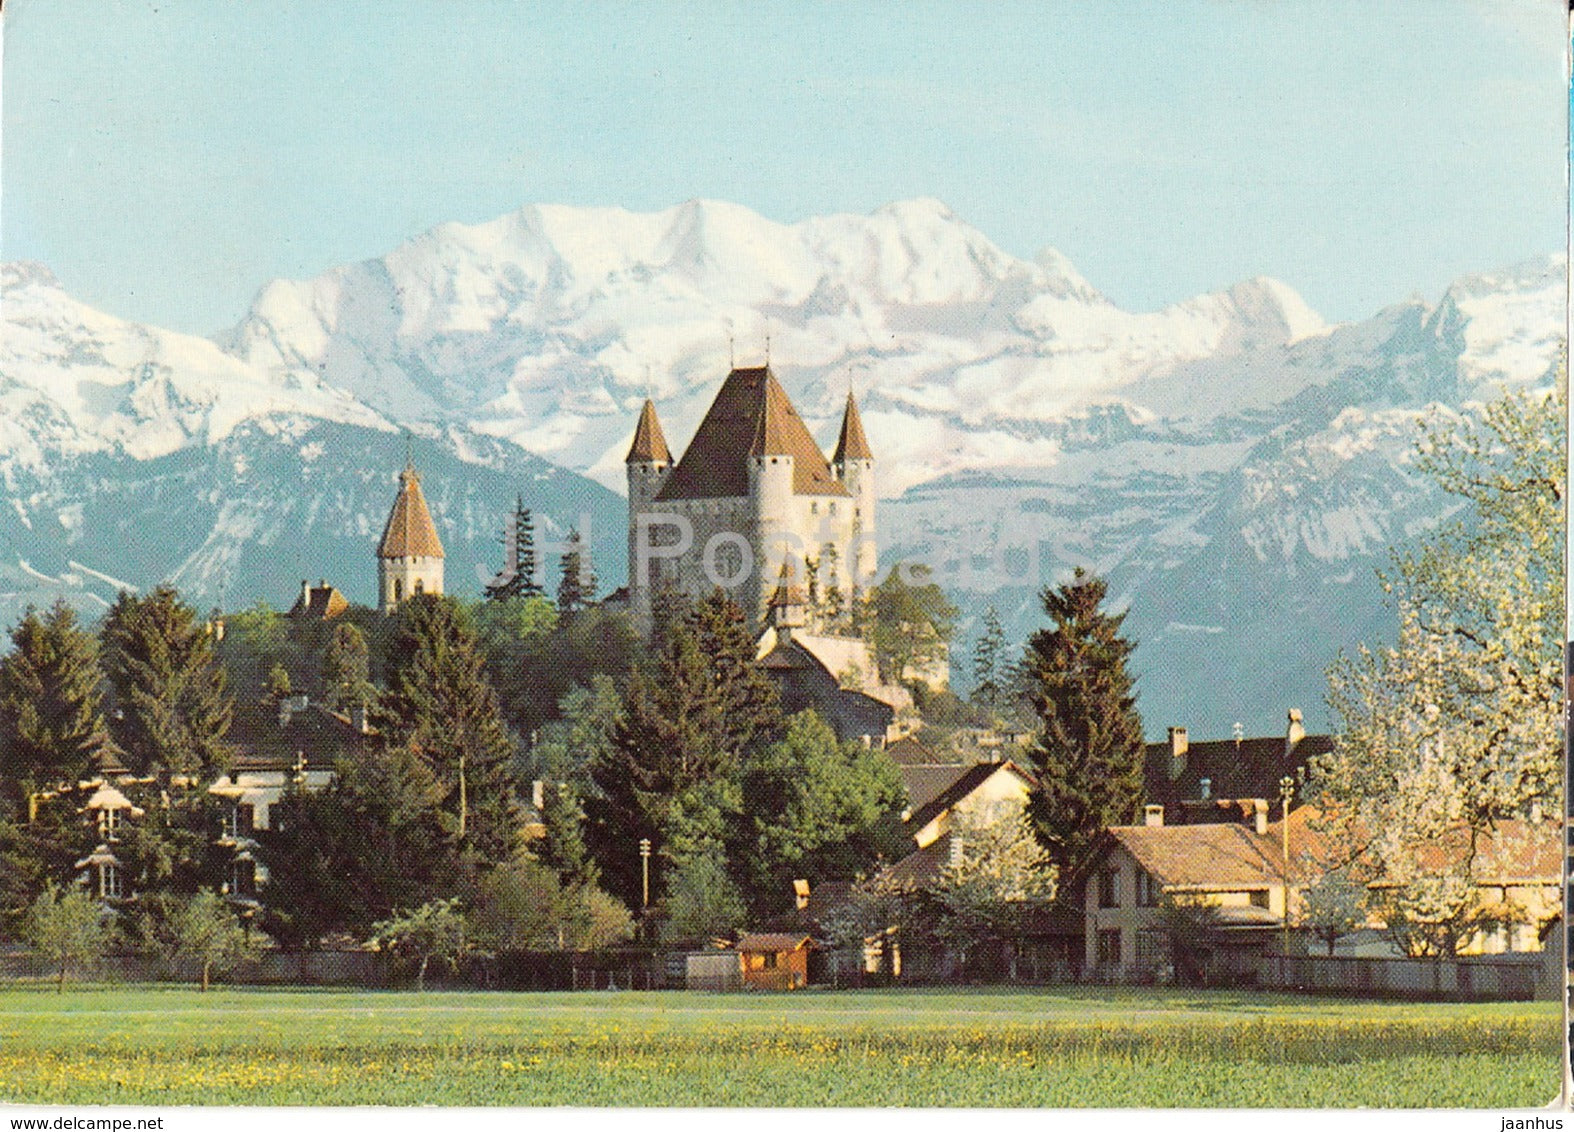 Thun - Thoune - Schloss mit Blümlisalp - castle - 8239 - Switzerland - 1977 - used - JH Postcards